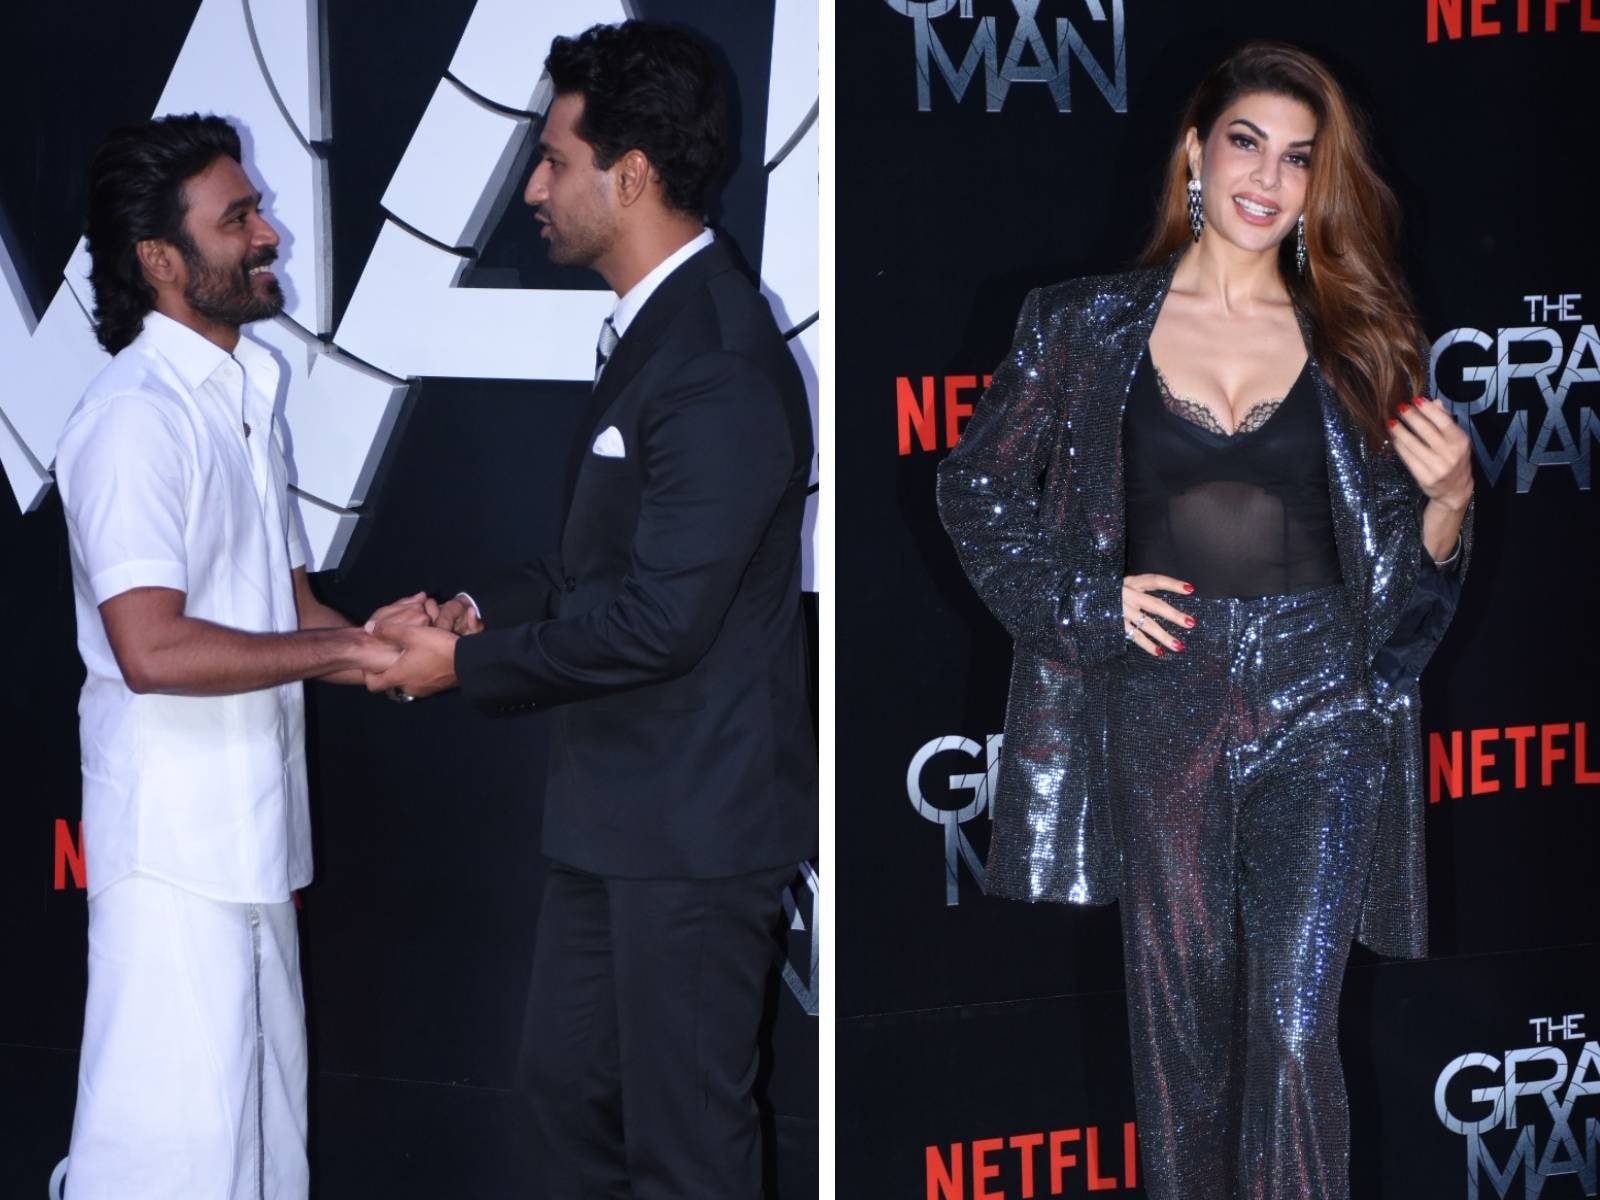 Dhanush Wears Veshti For 'The Gray Man' Mumbai Premiere, Poses